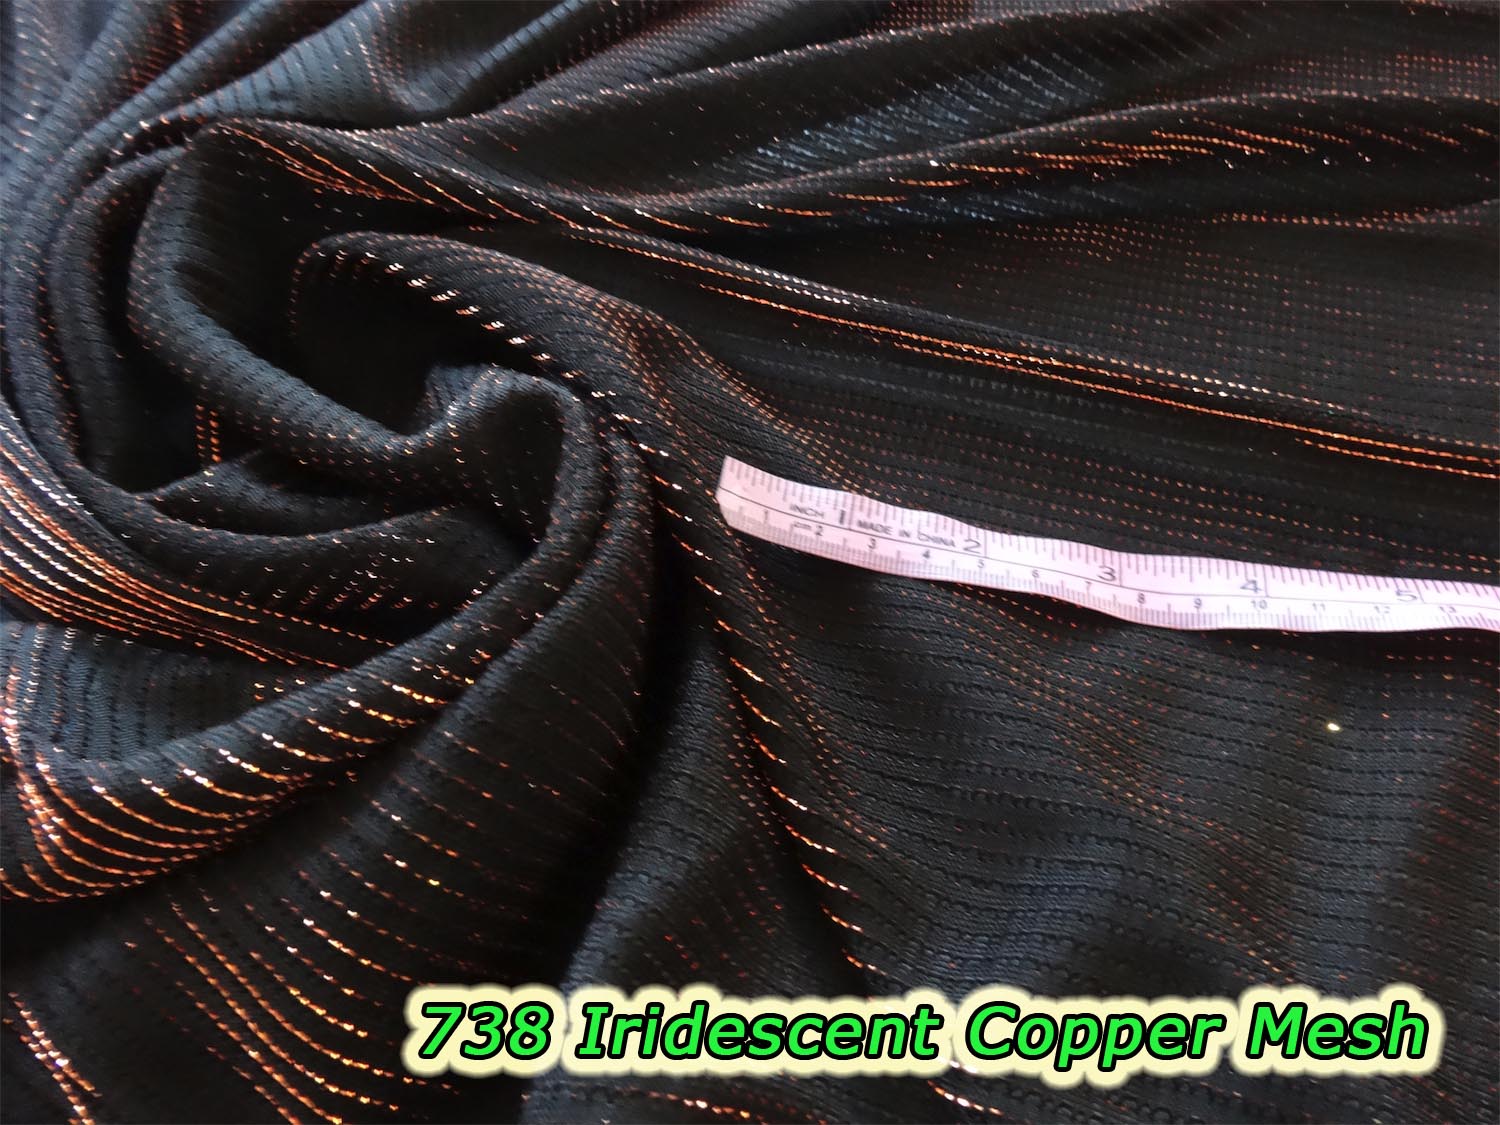 738 Iridescent Copper Mesh